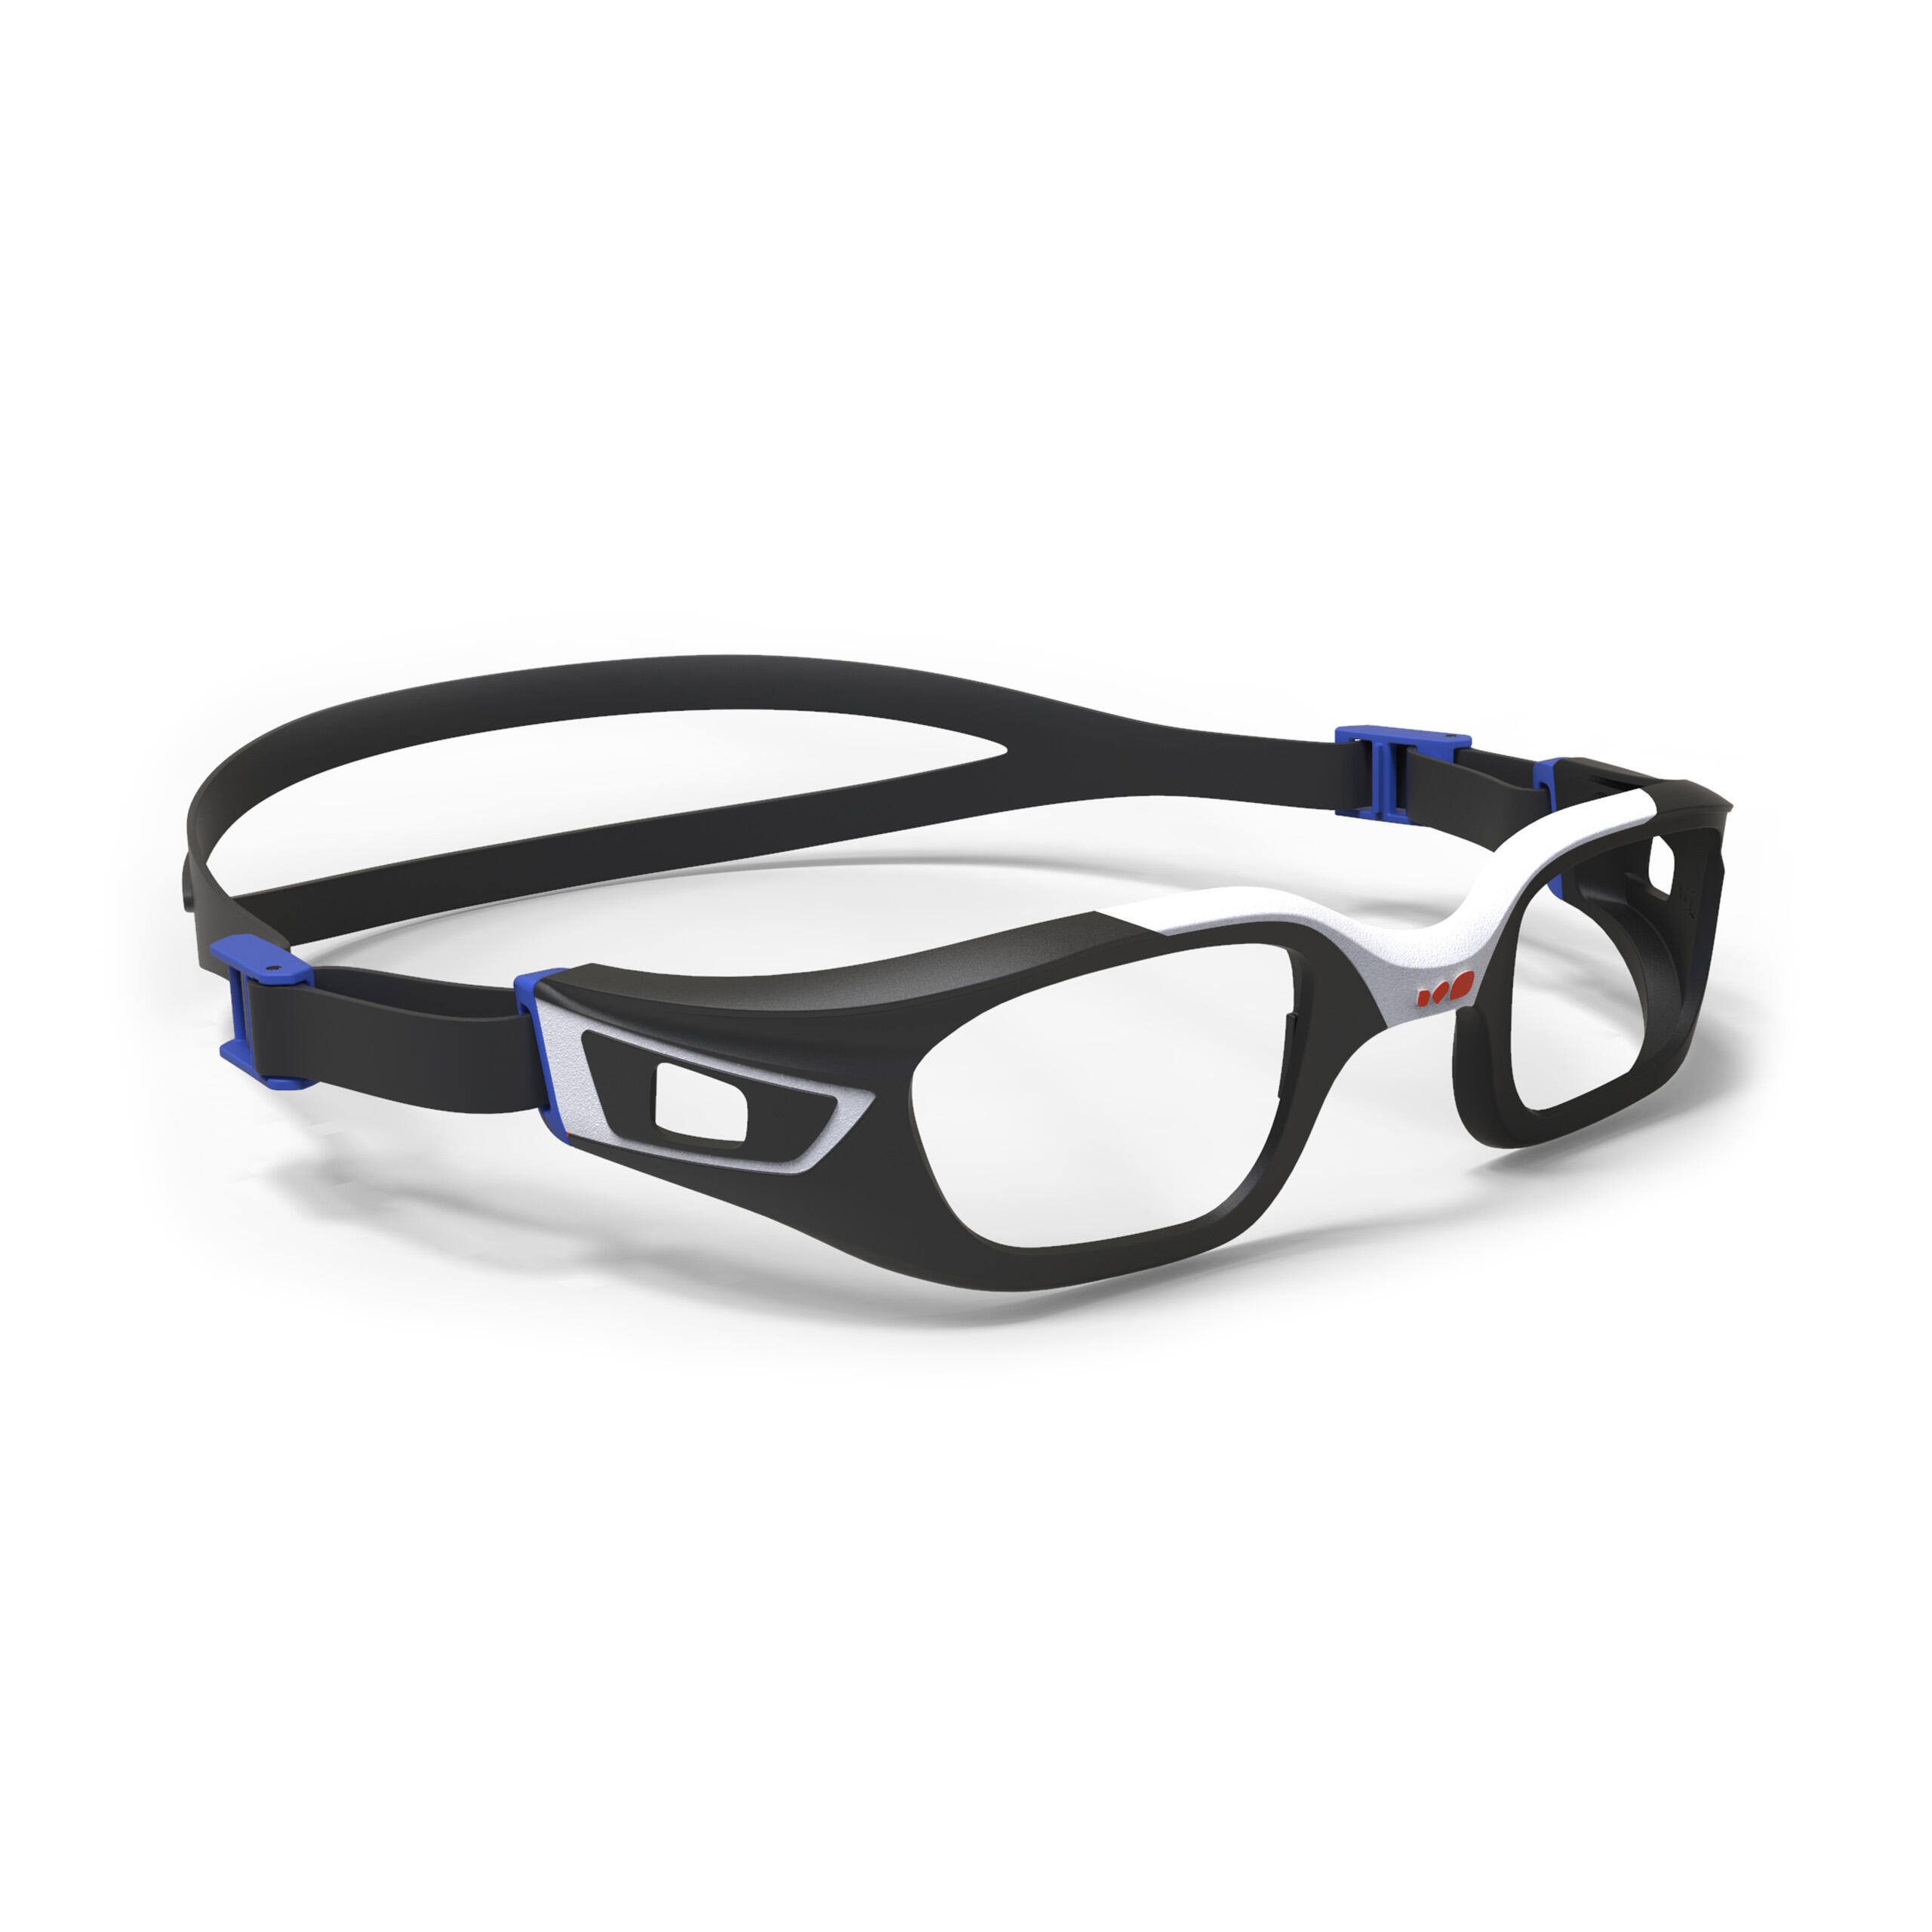 Ramă ochelari Înot Selfit Lentile Corectoare Mărimea L Negru-Alb La Oferta Online decathlon imagine La Oferta Online